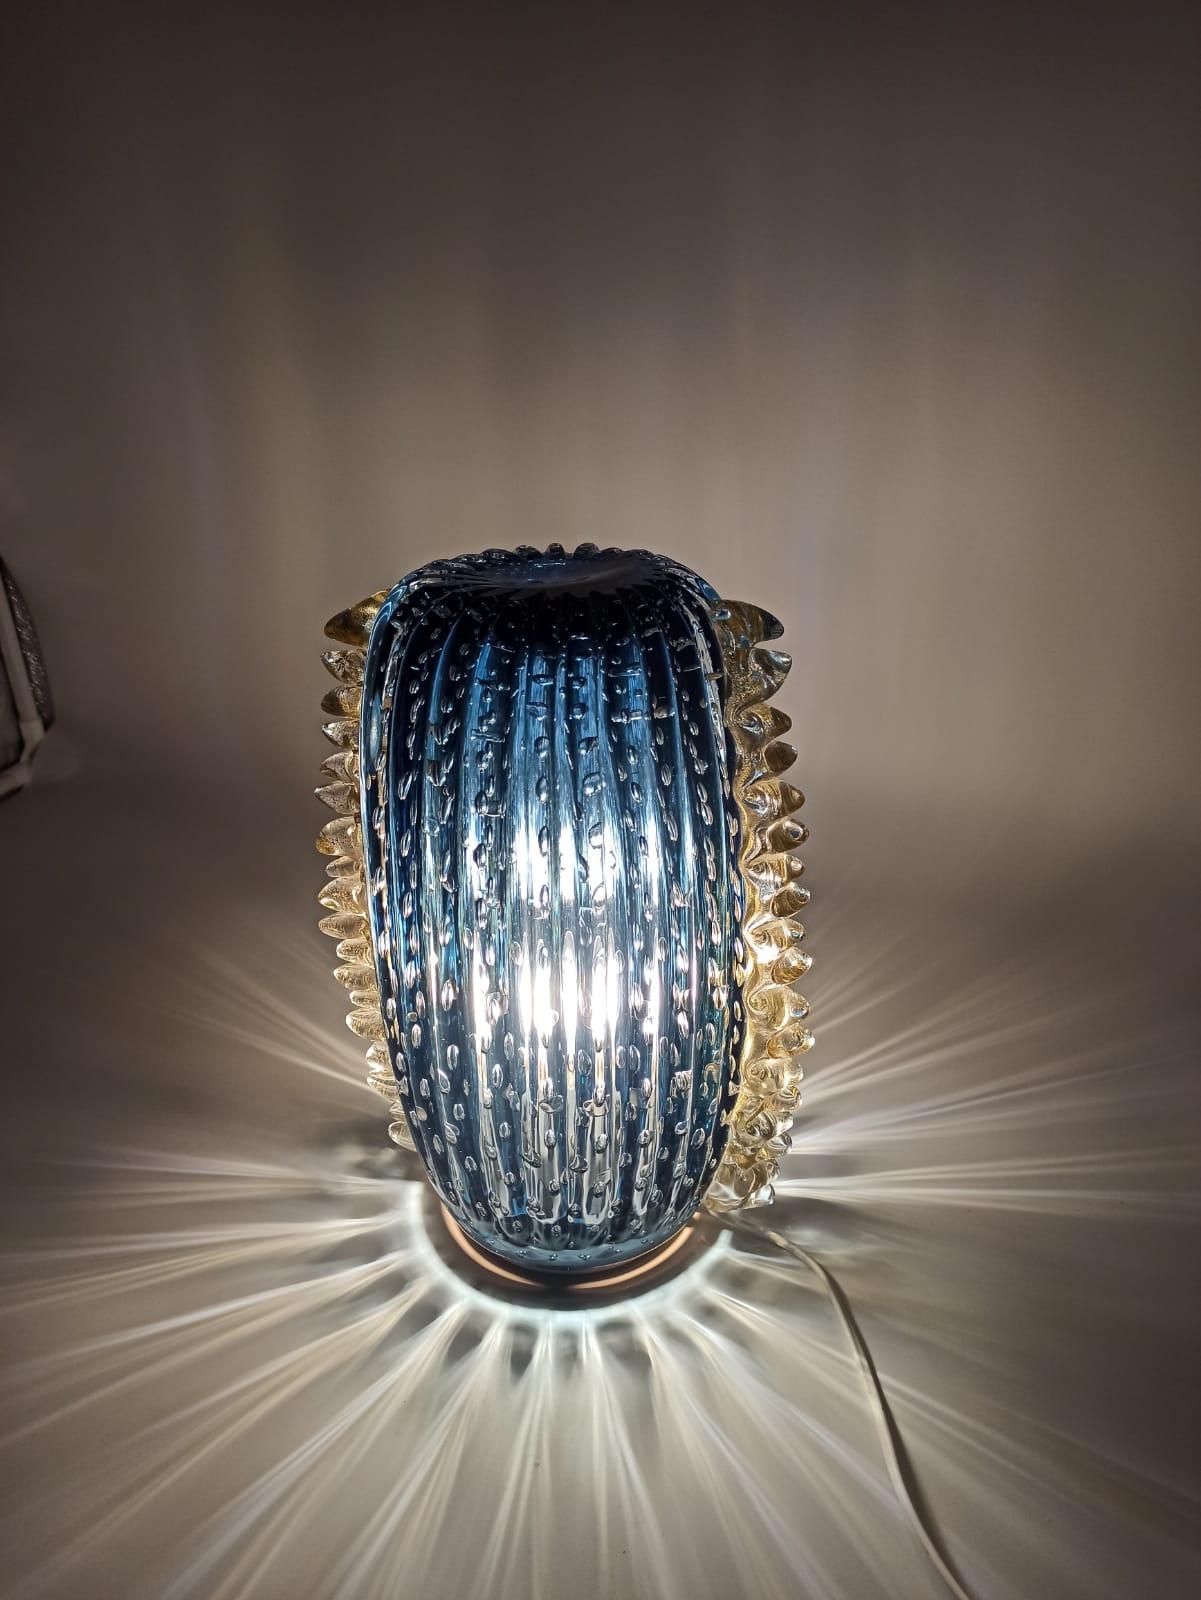 Presentiamo la nostra esclusiva lampada da tavolo, alta 35 cm e realizzata con maestria in vetro artistico di Murano. Questo affascinante pezzo è immerso in una vibrante tonalità turchese, caratterizzato da bolle ballotton sottoposte al vetro e